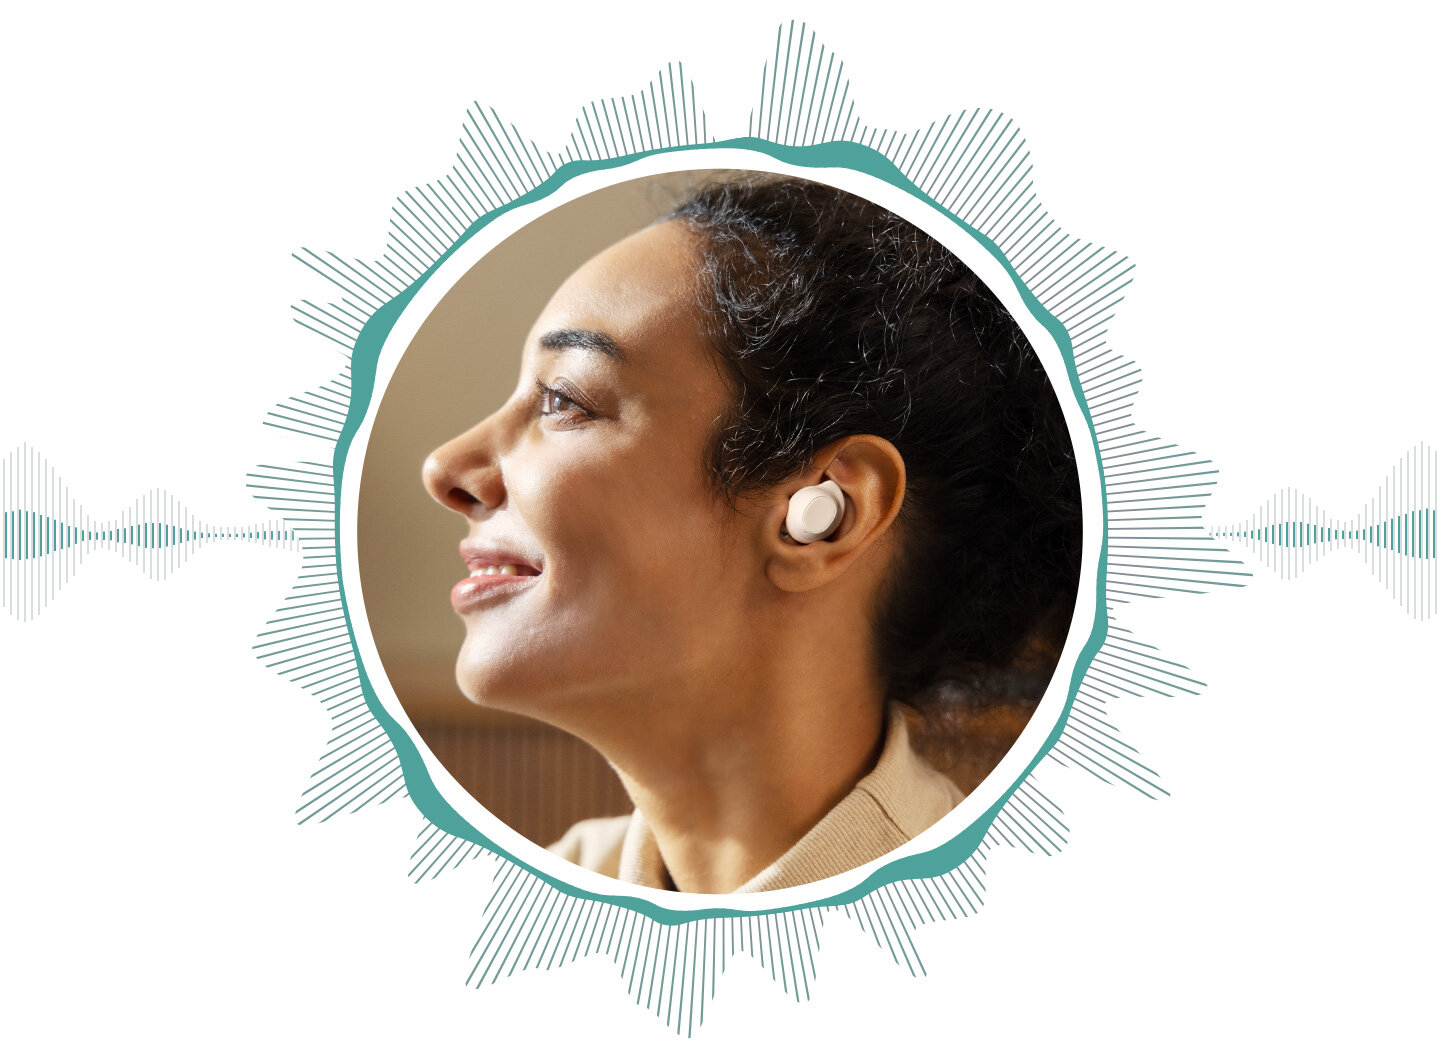 Kobieta nosząca jedną ze słuchawek Galaxy Buds FE w lewym uchu. Jej twarz jest ujęta w okrąg przypominający fale, co symbolizuje aktywną funkcję słuchawek dousznych redukującą hałas.